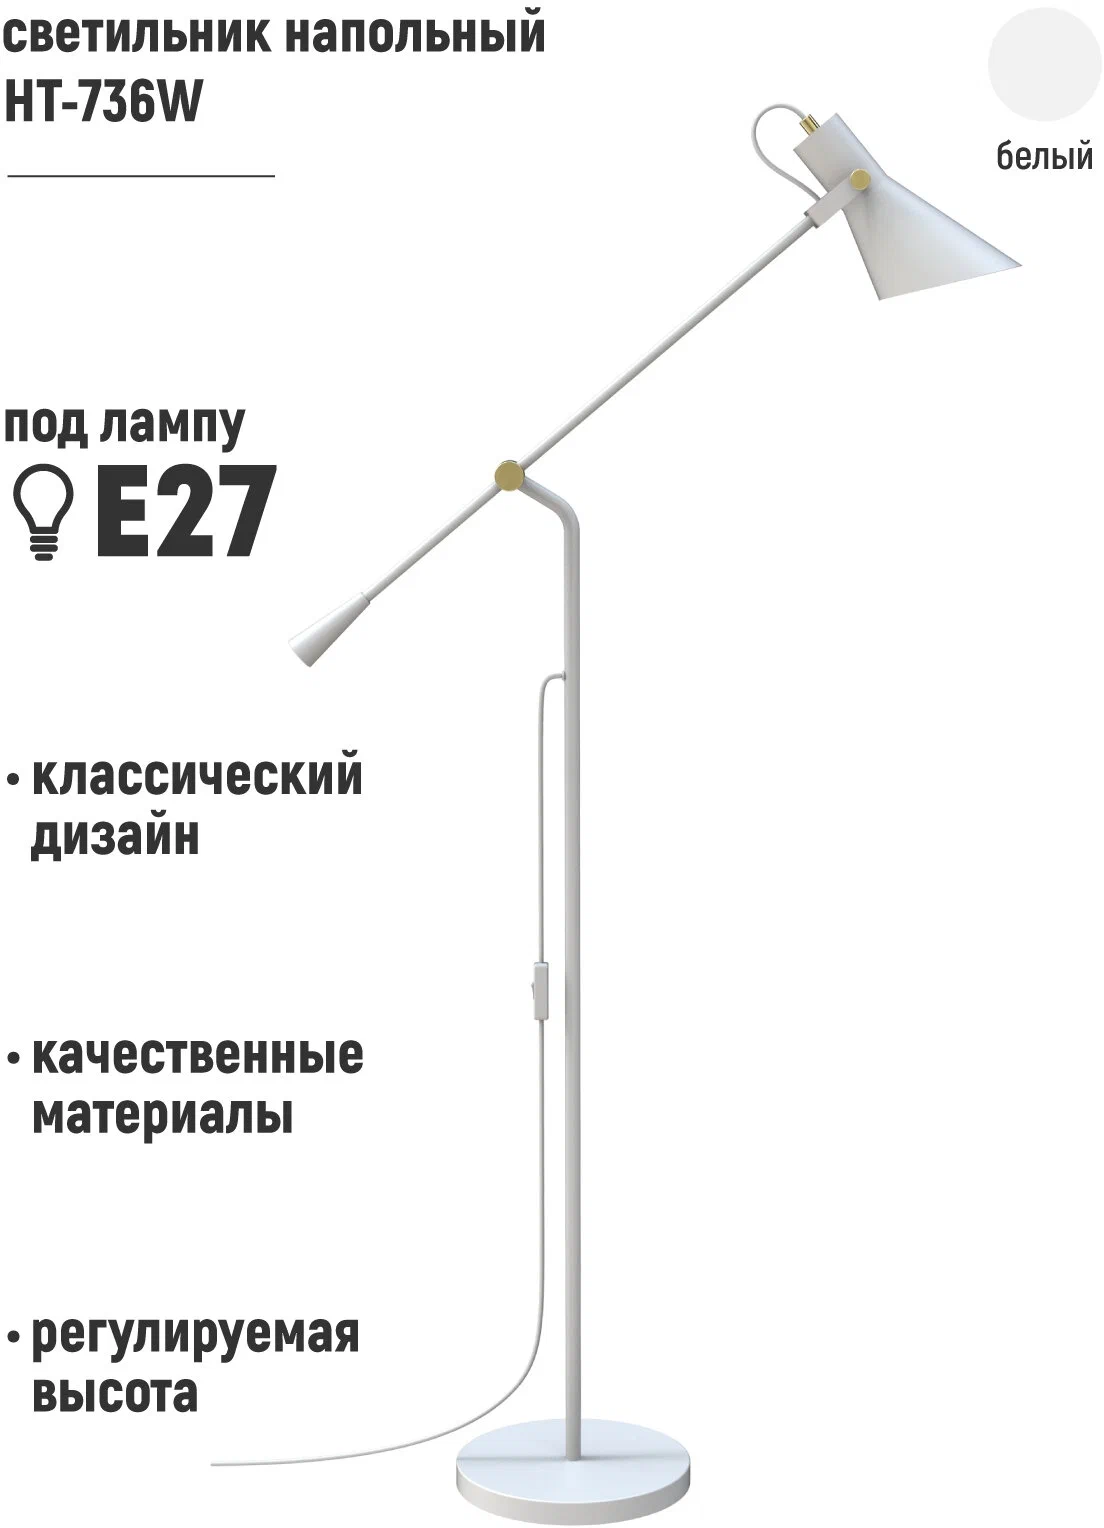 Светильник напольный HT-736W, ARTSTYLE, белый